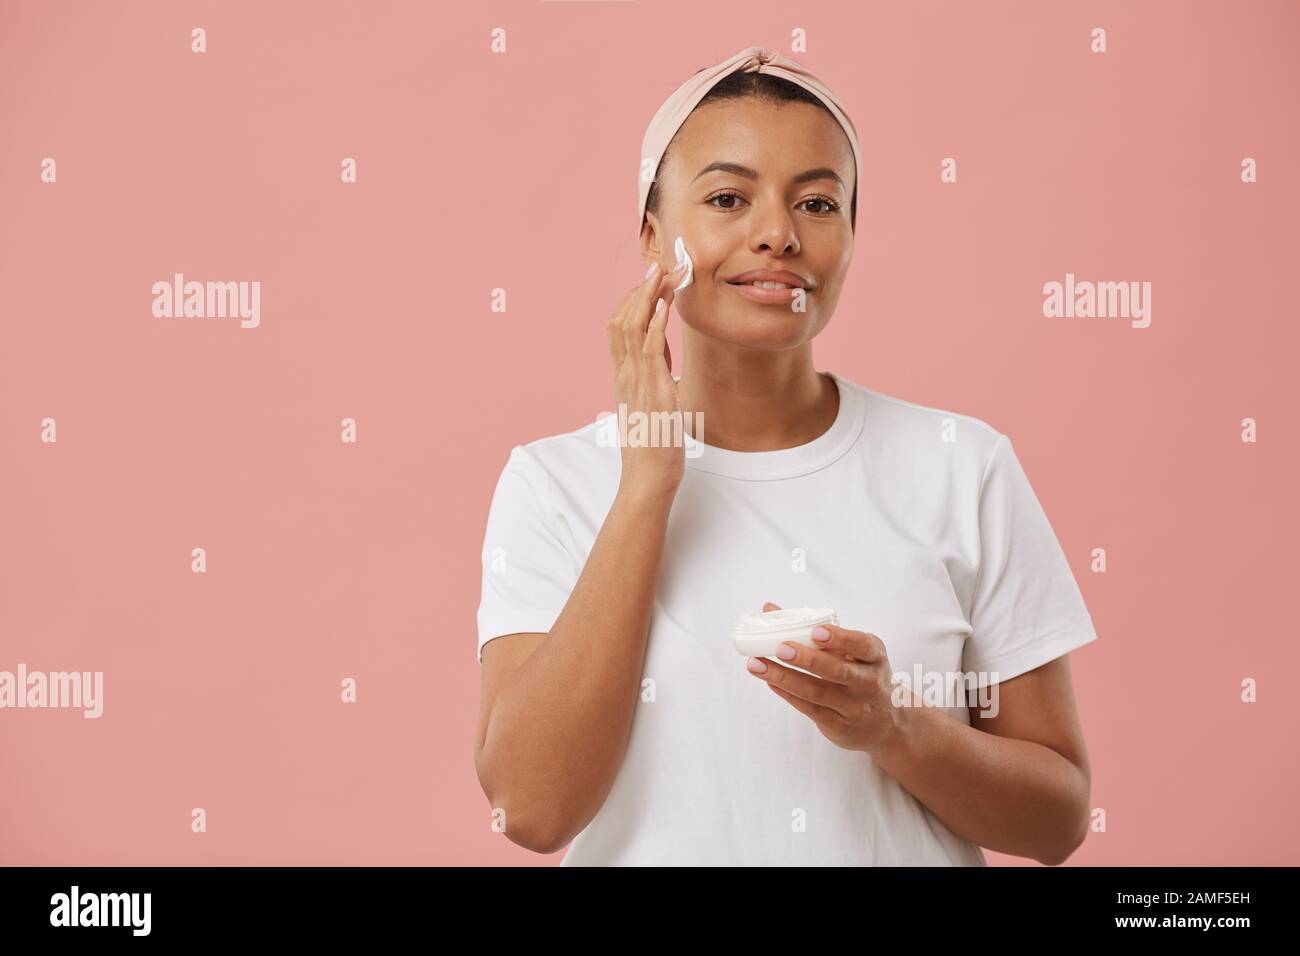 Taille hoch Portrait von Mixed-Race junge Frau mit Gesichtscreme und Lächeln auf der Kamera, während sie sich morgens vor pinkfarbenem Hintergrund während der Schönheitsroutine posiert Stockfoto